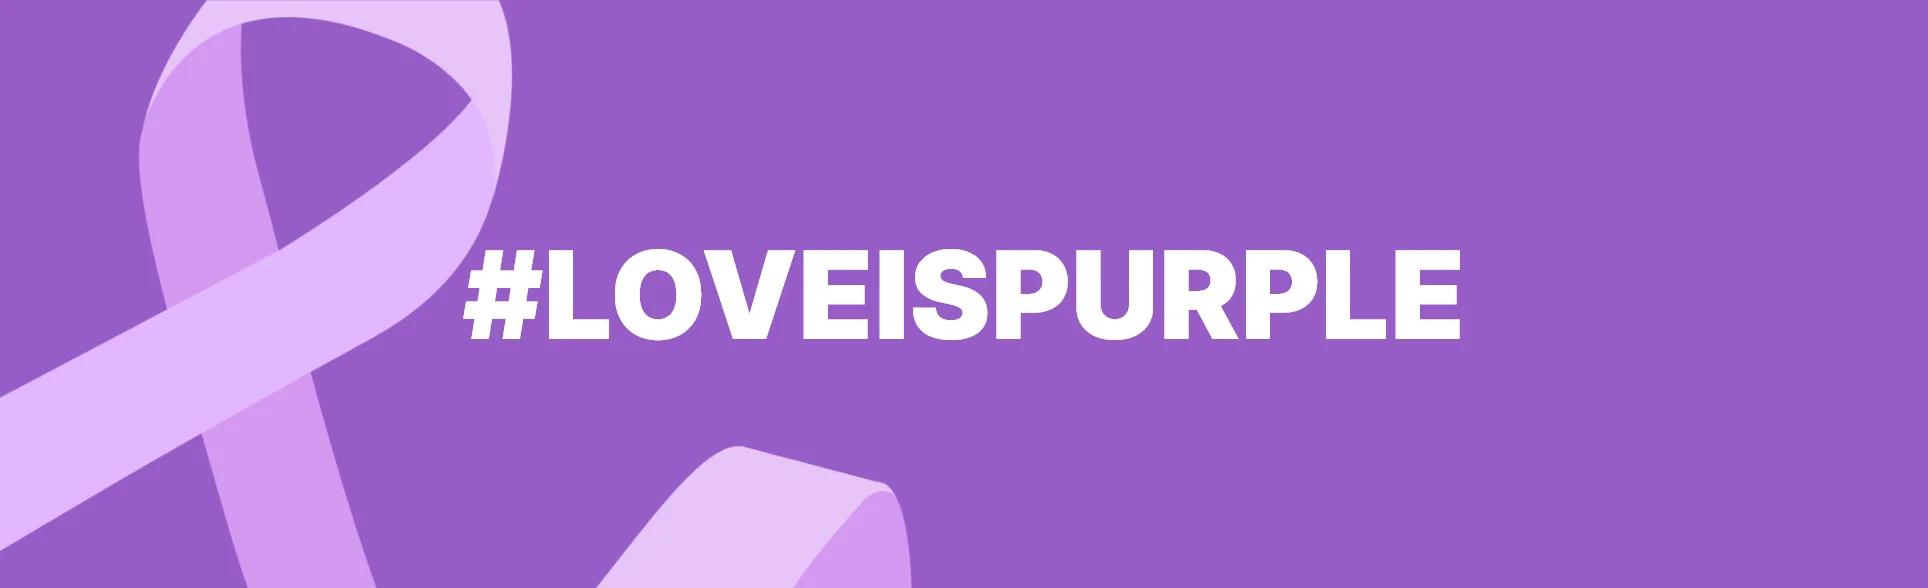 #LoveIsPurple